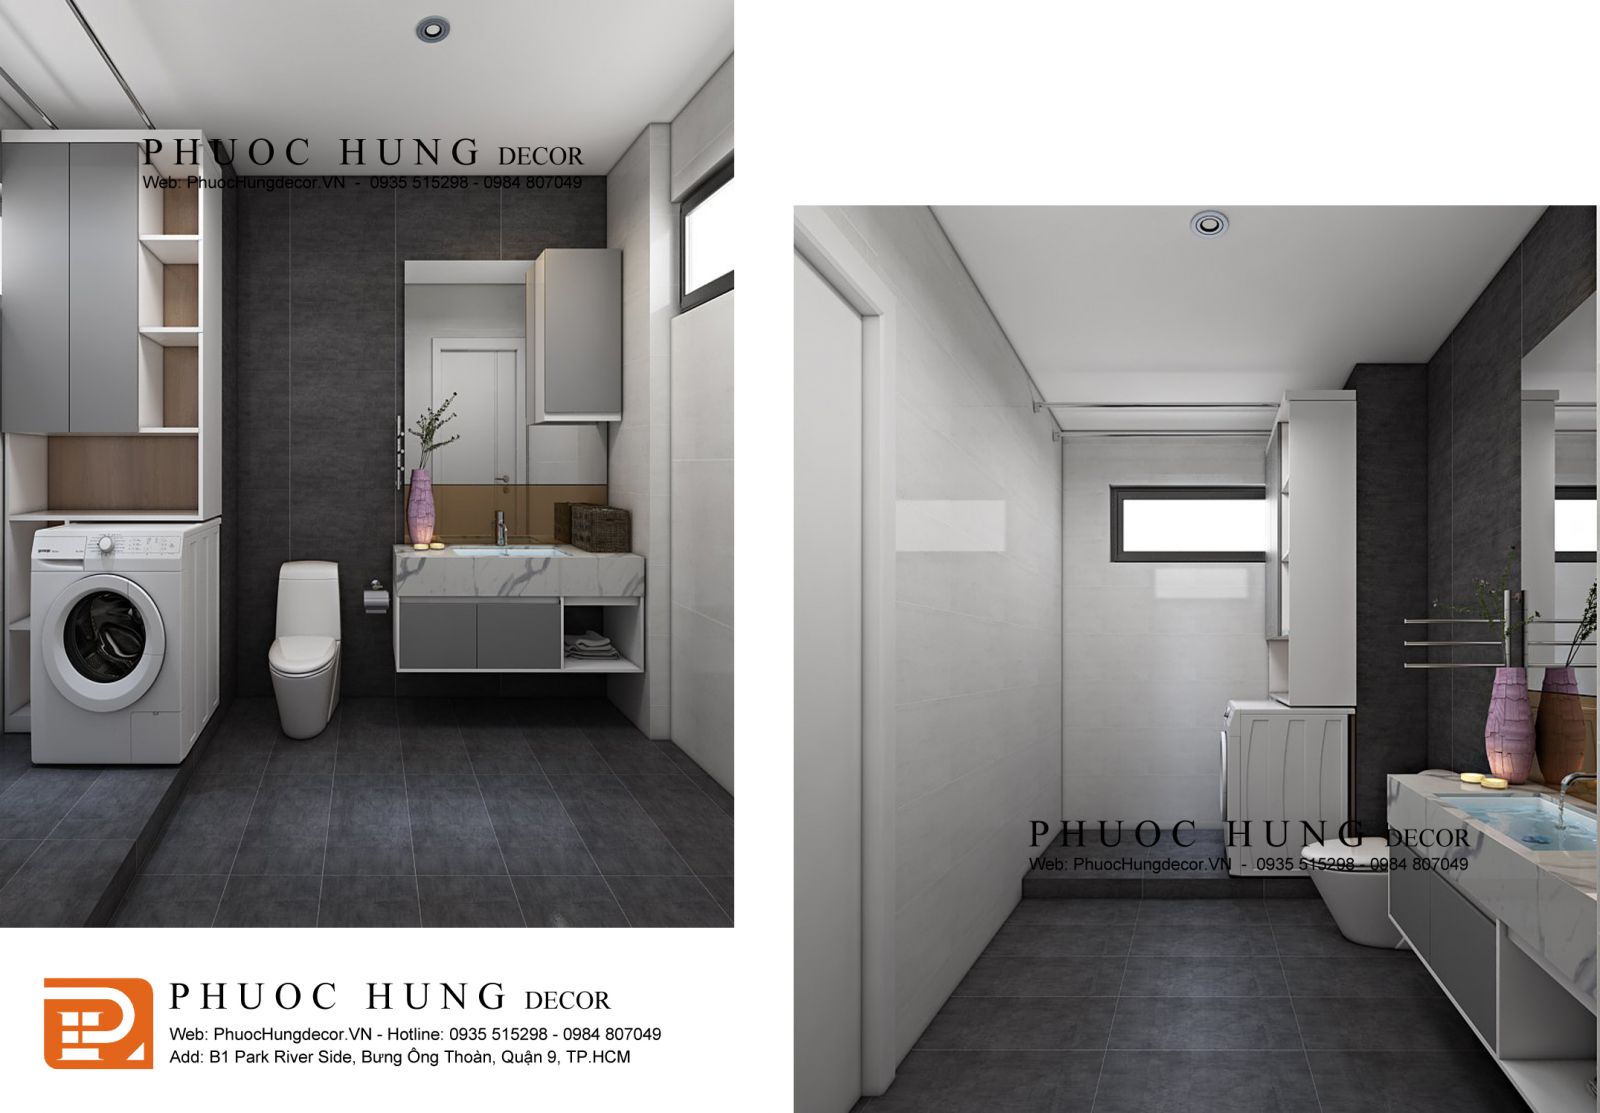 Thiết kế nội thất phòng tắm với gam màu tối đơn giản nhưng sang trọng